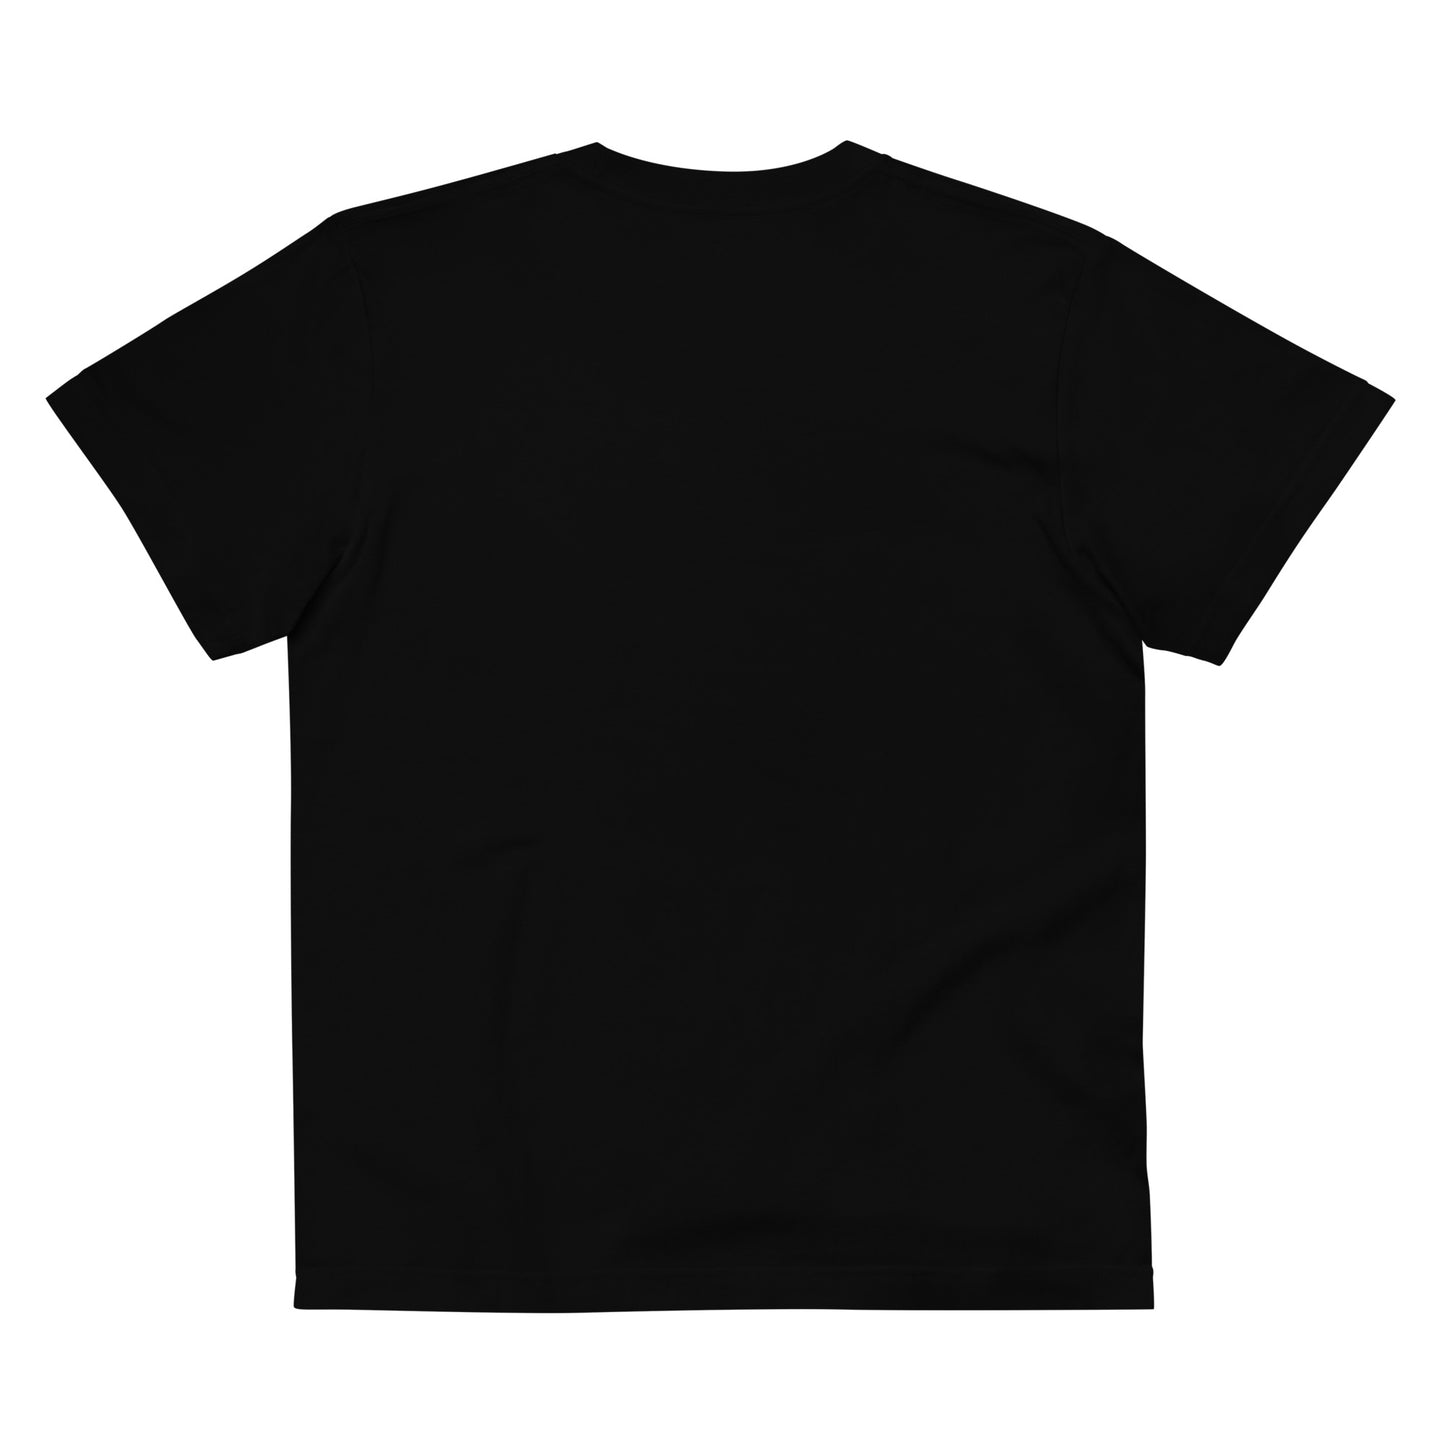 P017 - เสื้อยืดคอตตอนคุณภาพ (เตรียมตัว! : สีดำ/สีดำ)